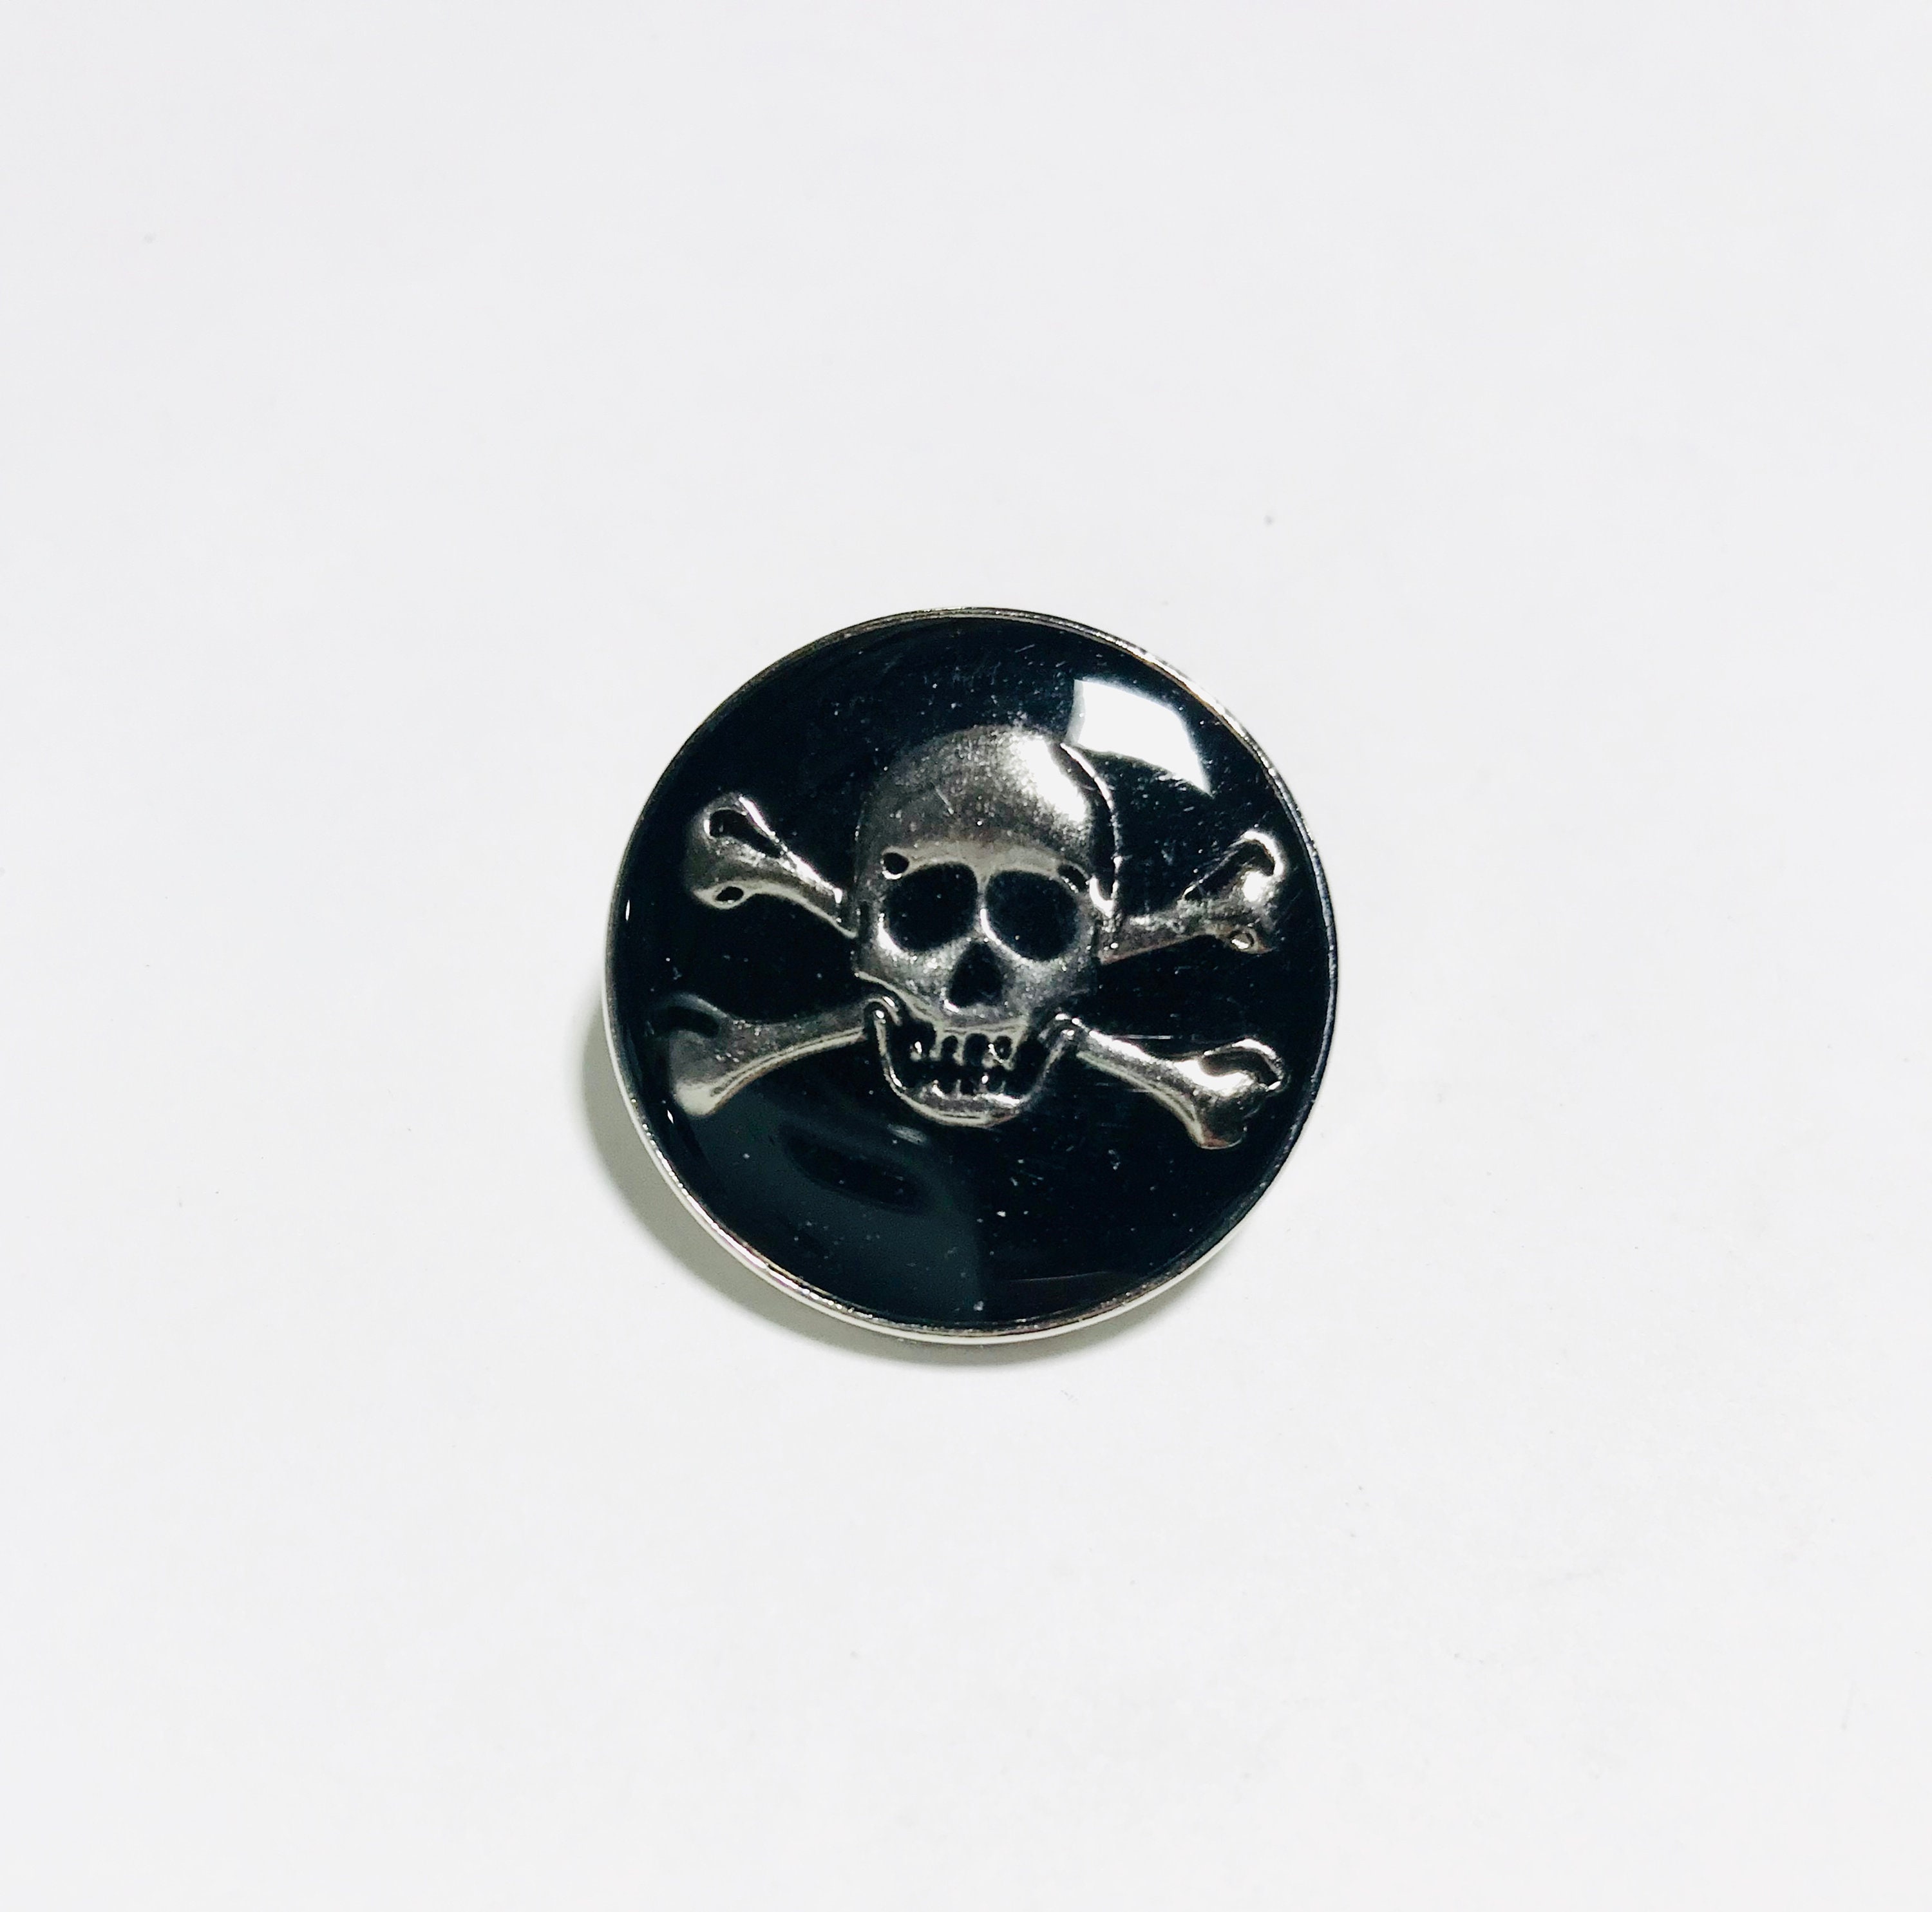 Skull And Cross Bones White Enamel & Metal Lapel Gift Pin Badge 20mm BRAND NEW 